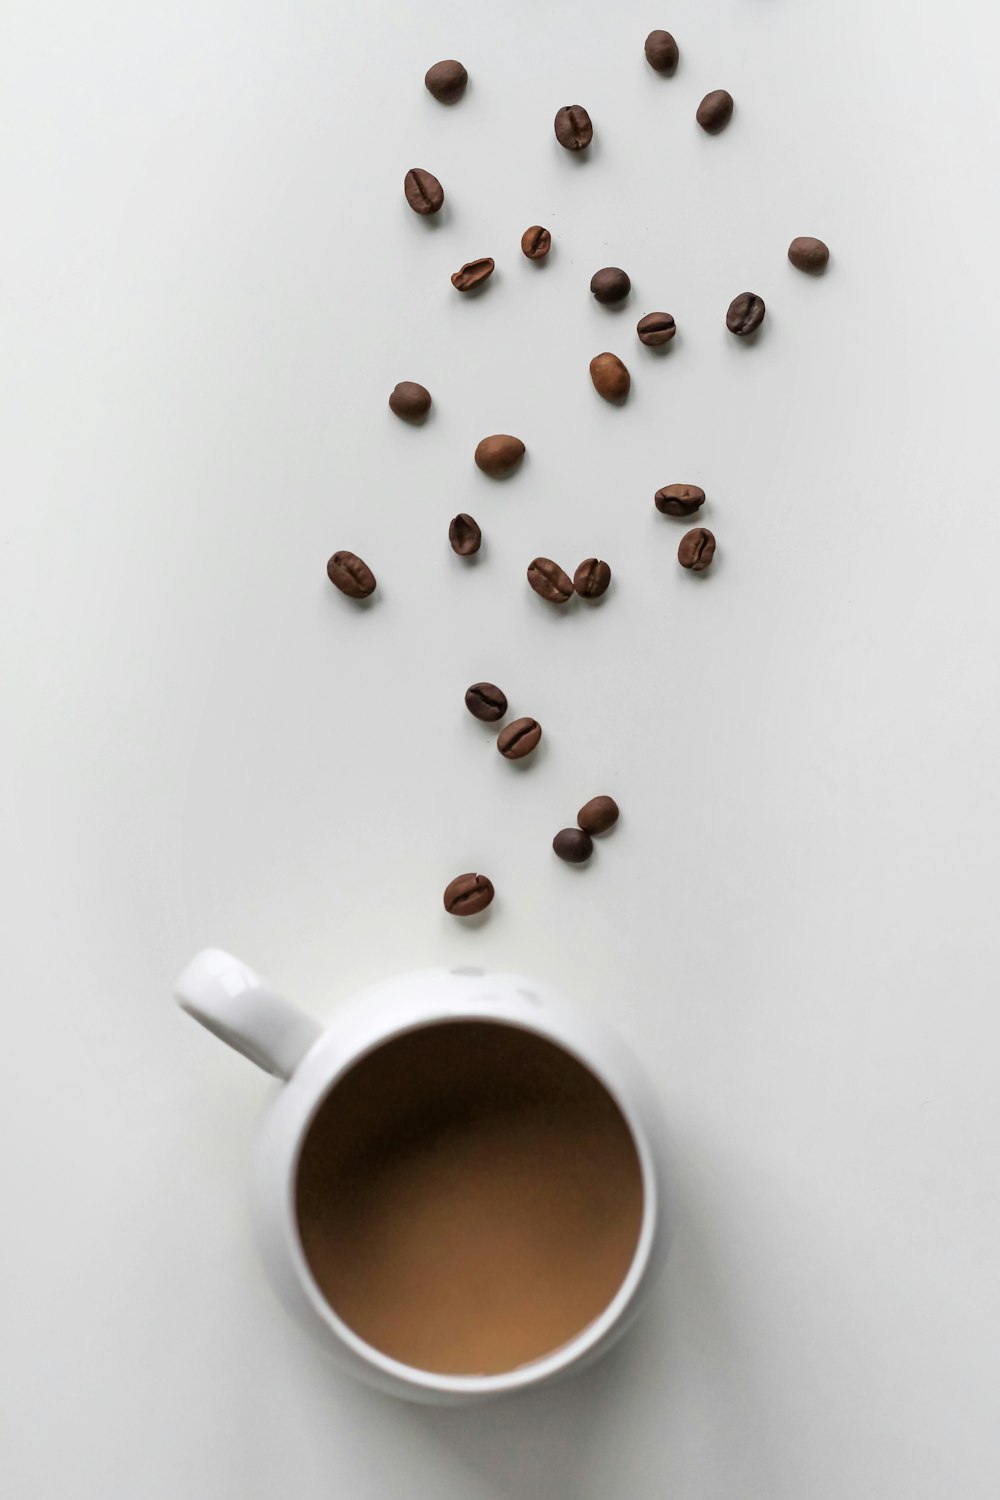 granos de café y taza llena de café